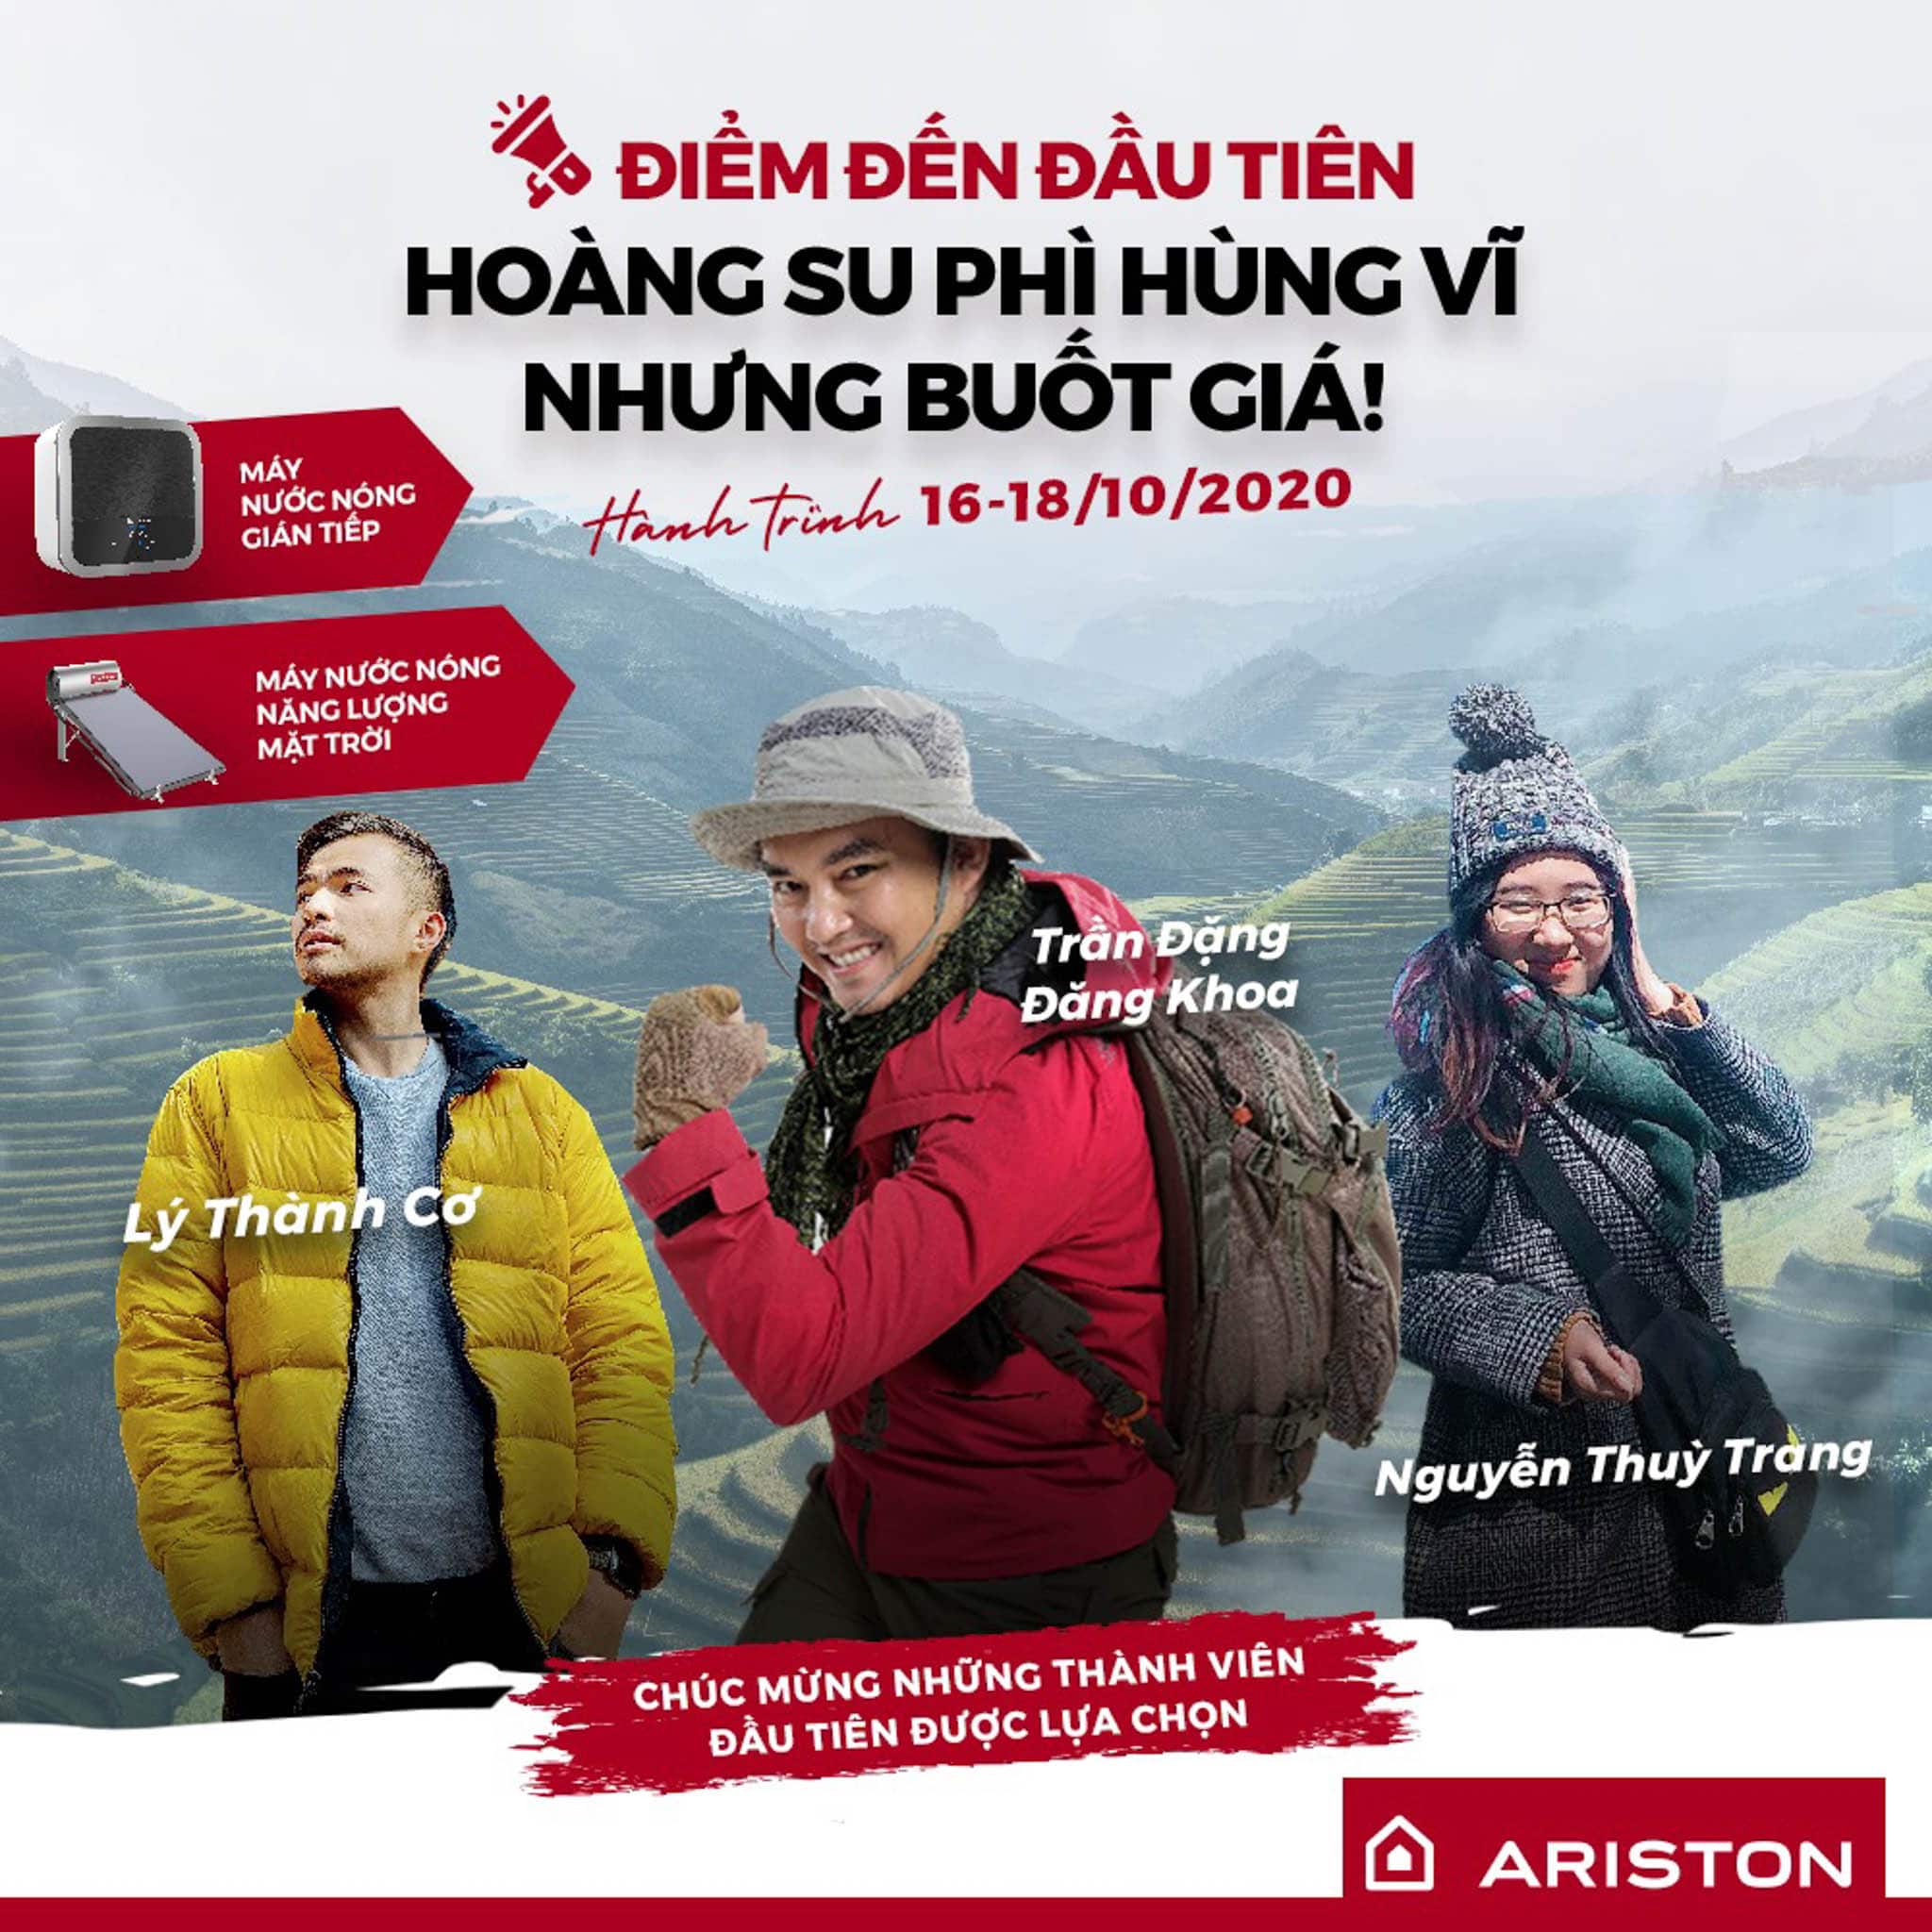 Biệt đội Ariston hé lộ thông tin đầu tiên trong hành trình xuyên Việt